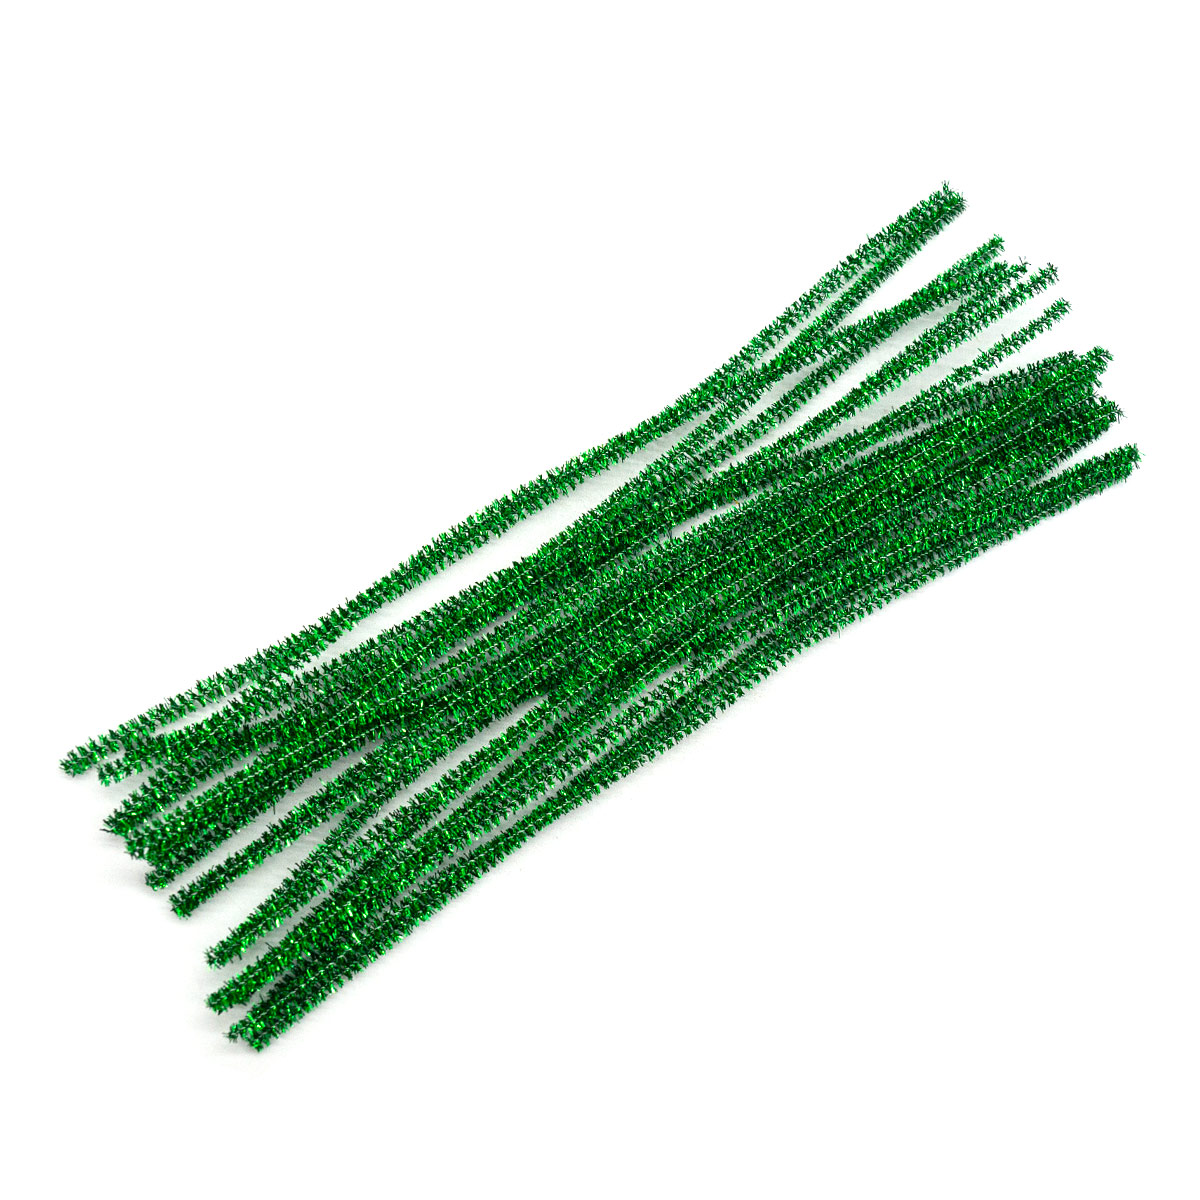 Проволока - синель Astra&Craft с люрексом для рукоделия 6 мм х 30 см 20 шт зеленый - фото 1